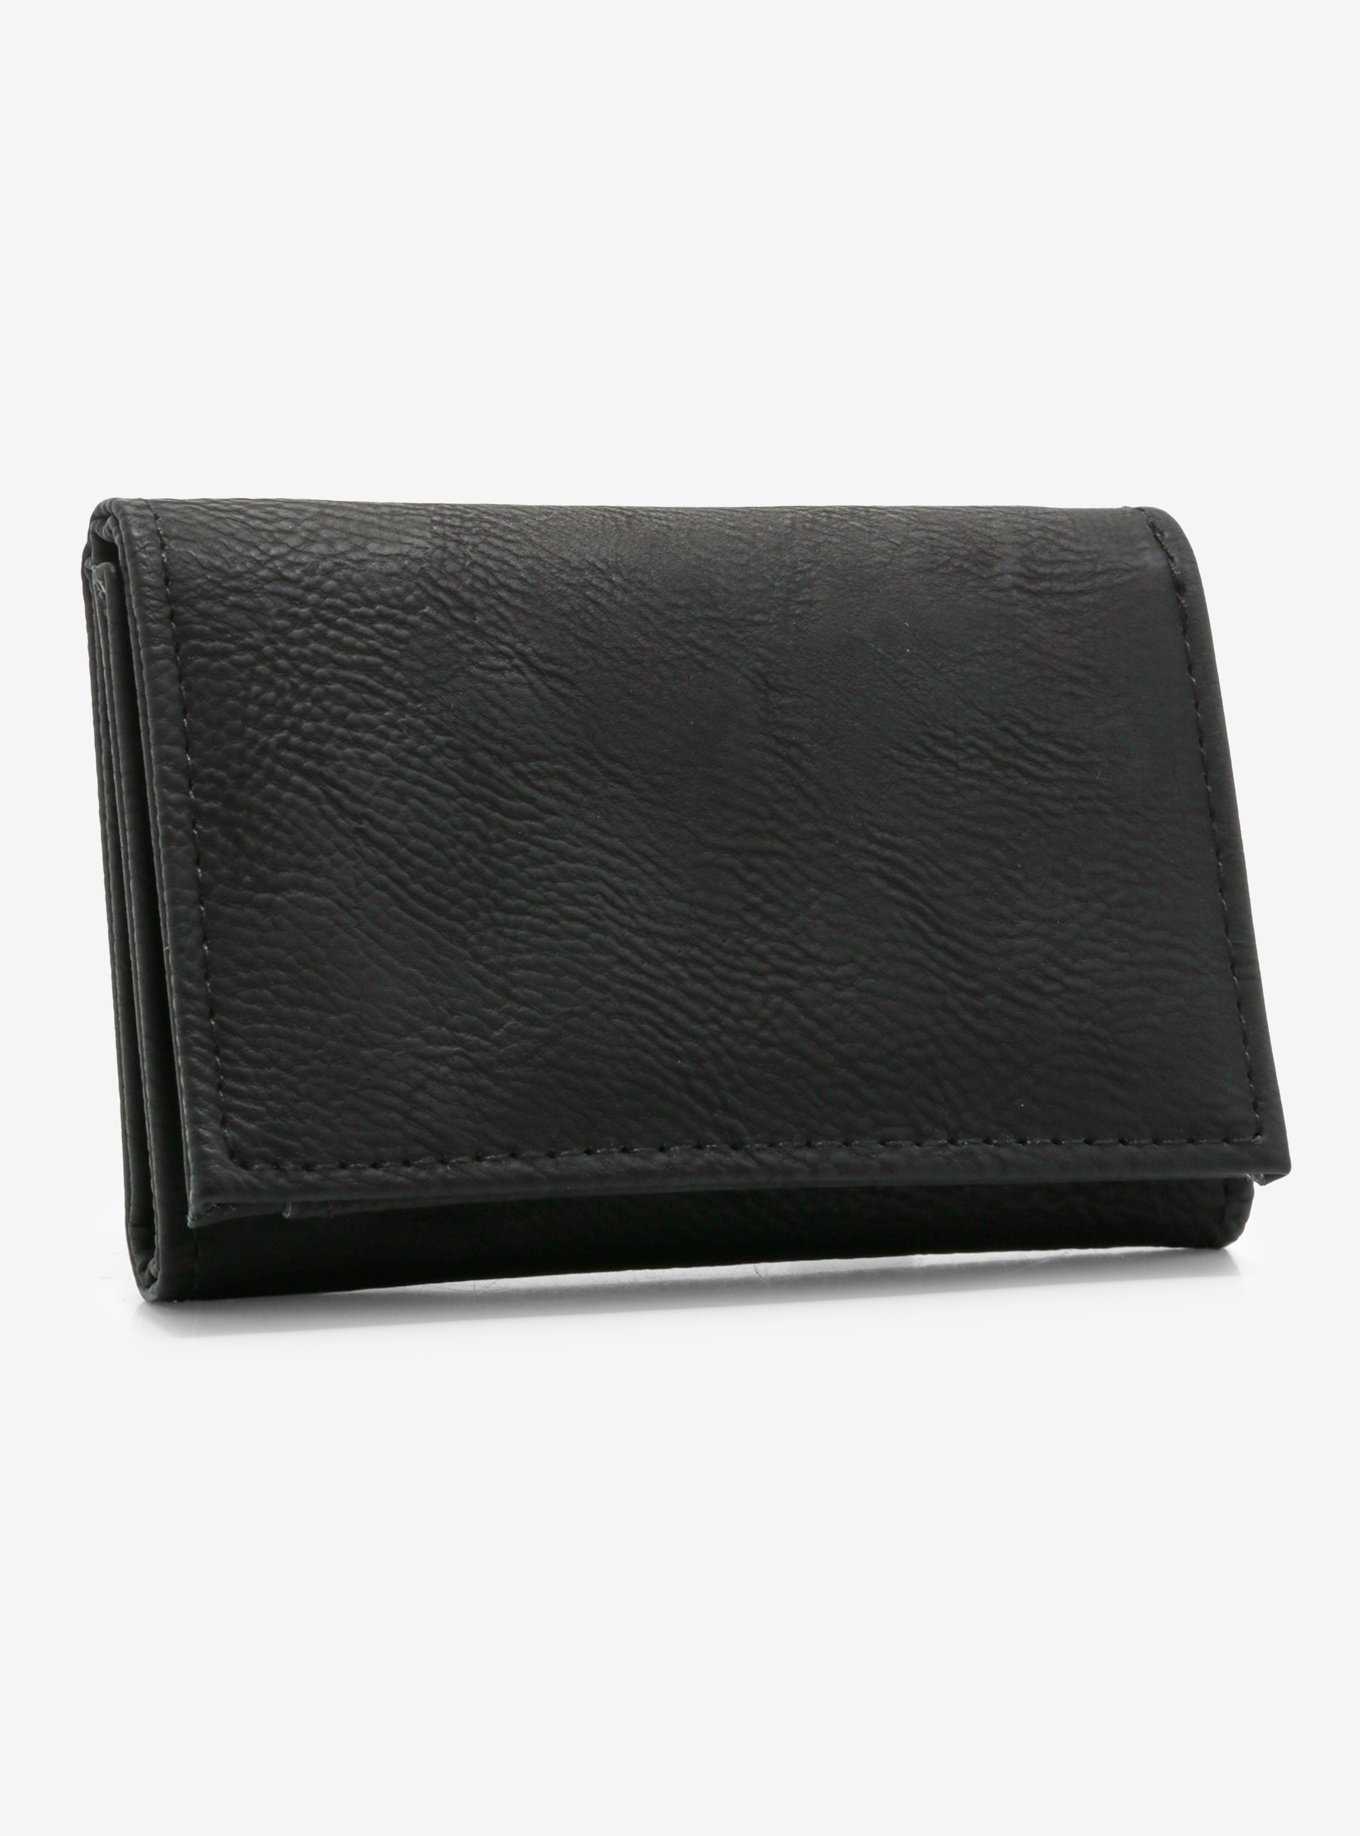 Black Trifold Wallet, , hi-res